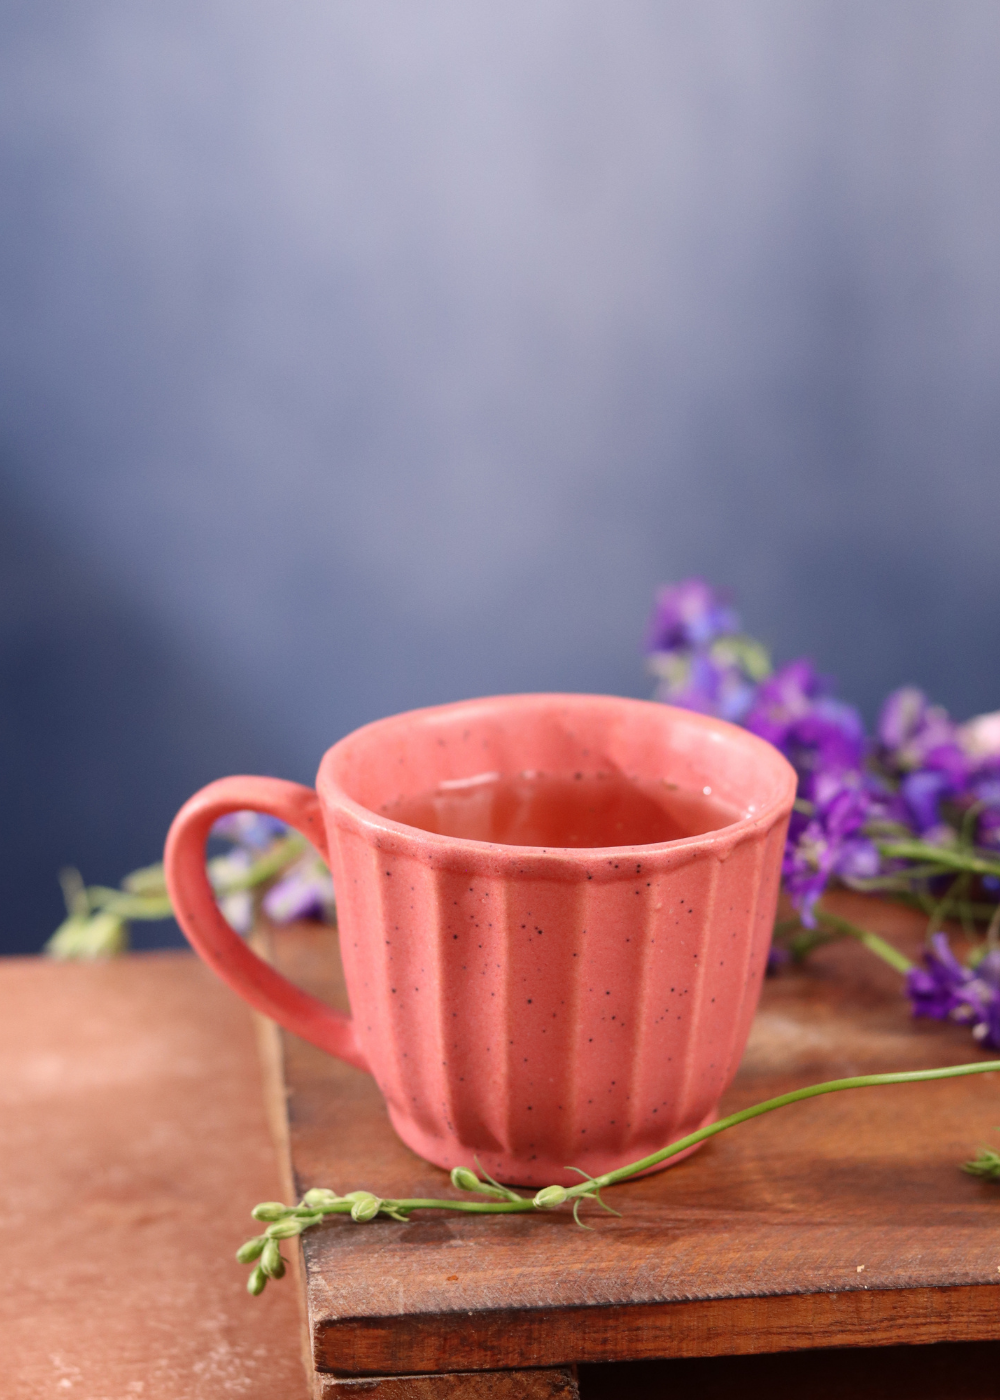 Ceramic tea cup with tea